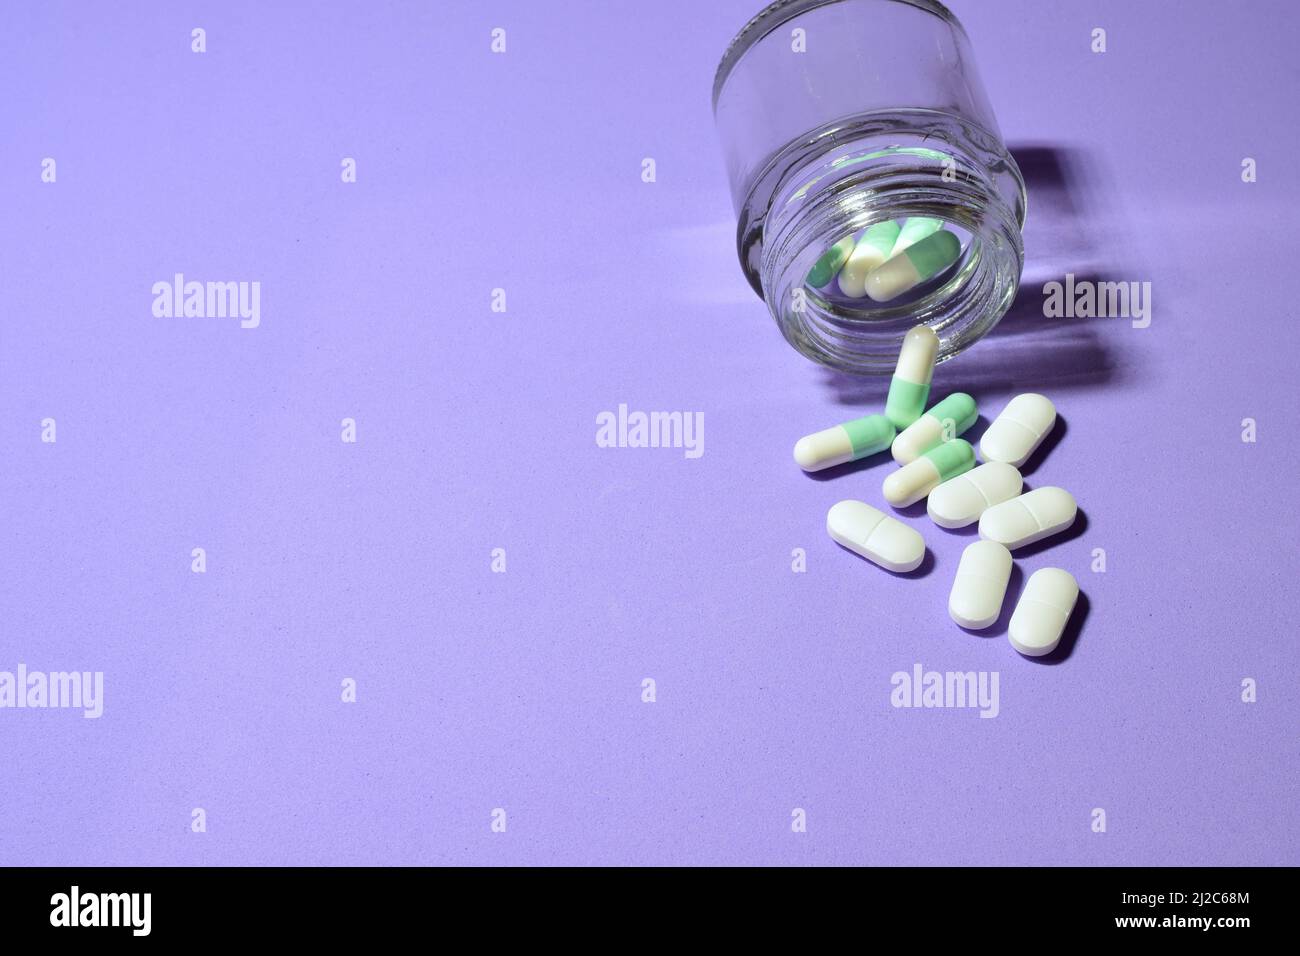 Einige Pillen und ein kleines Glas auf einem violetten Hintergrund Stockfoto